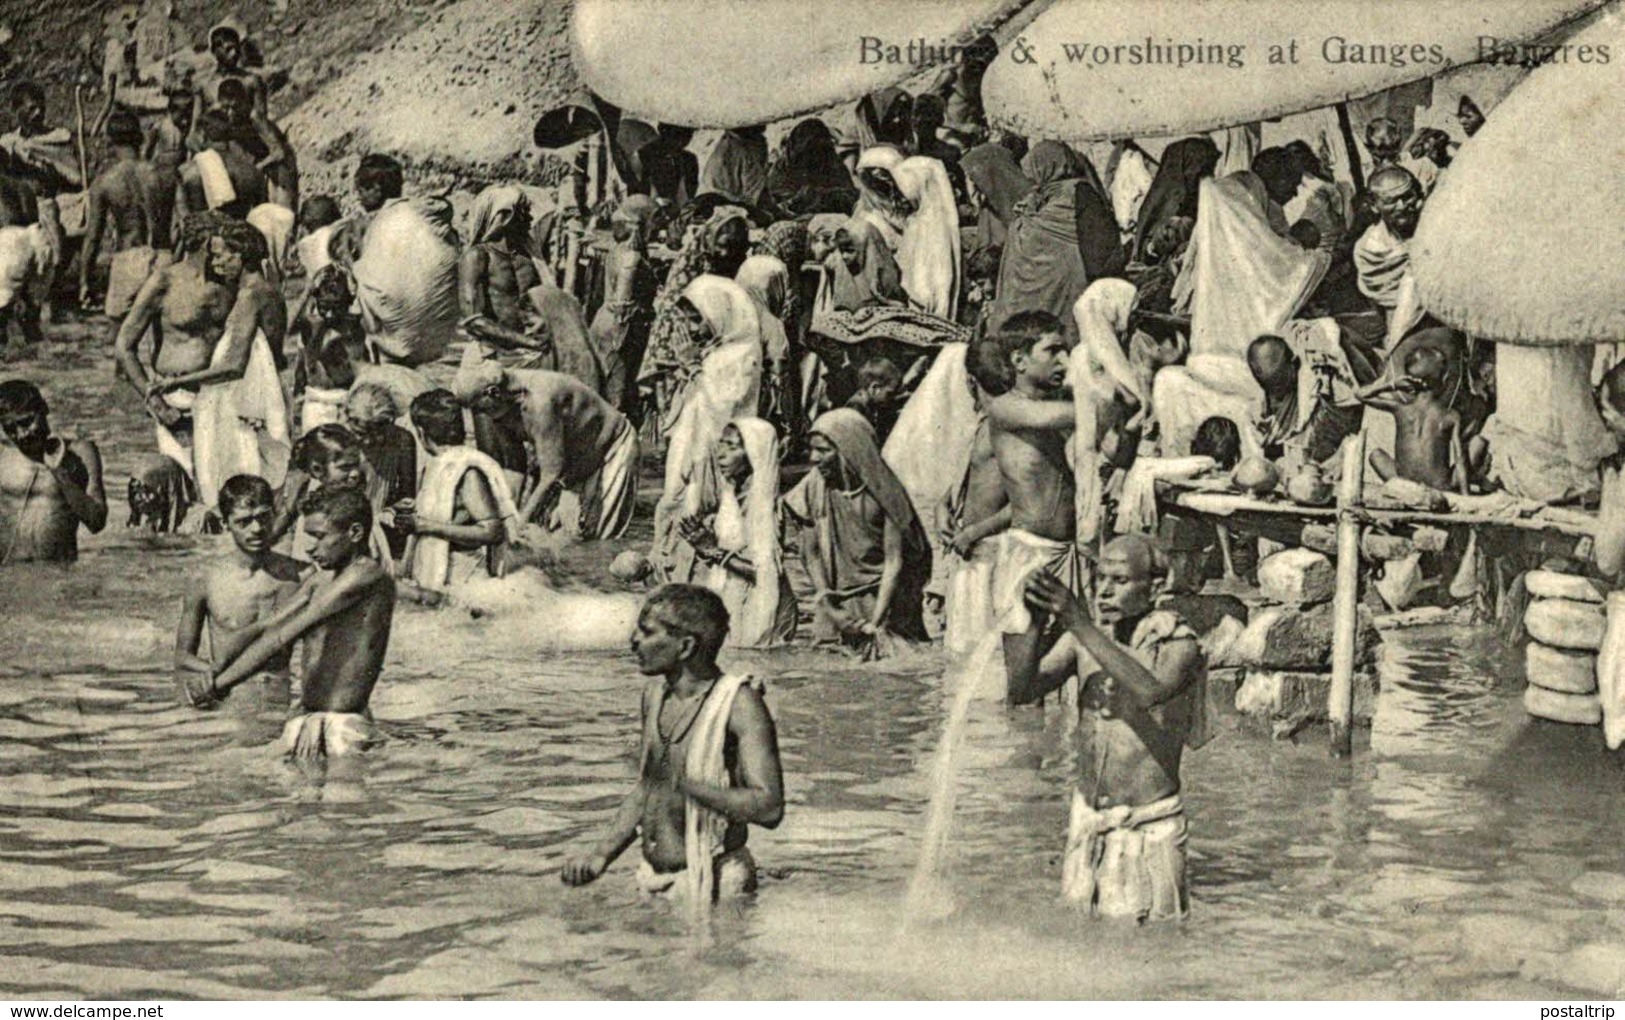 RARE   Benares, Bathing & Worshiping At Ganges - India